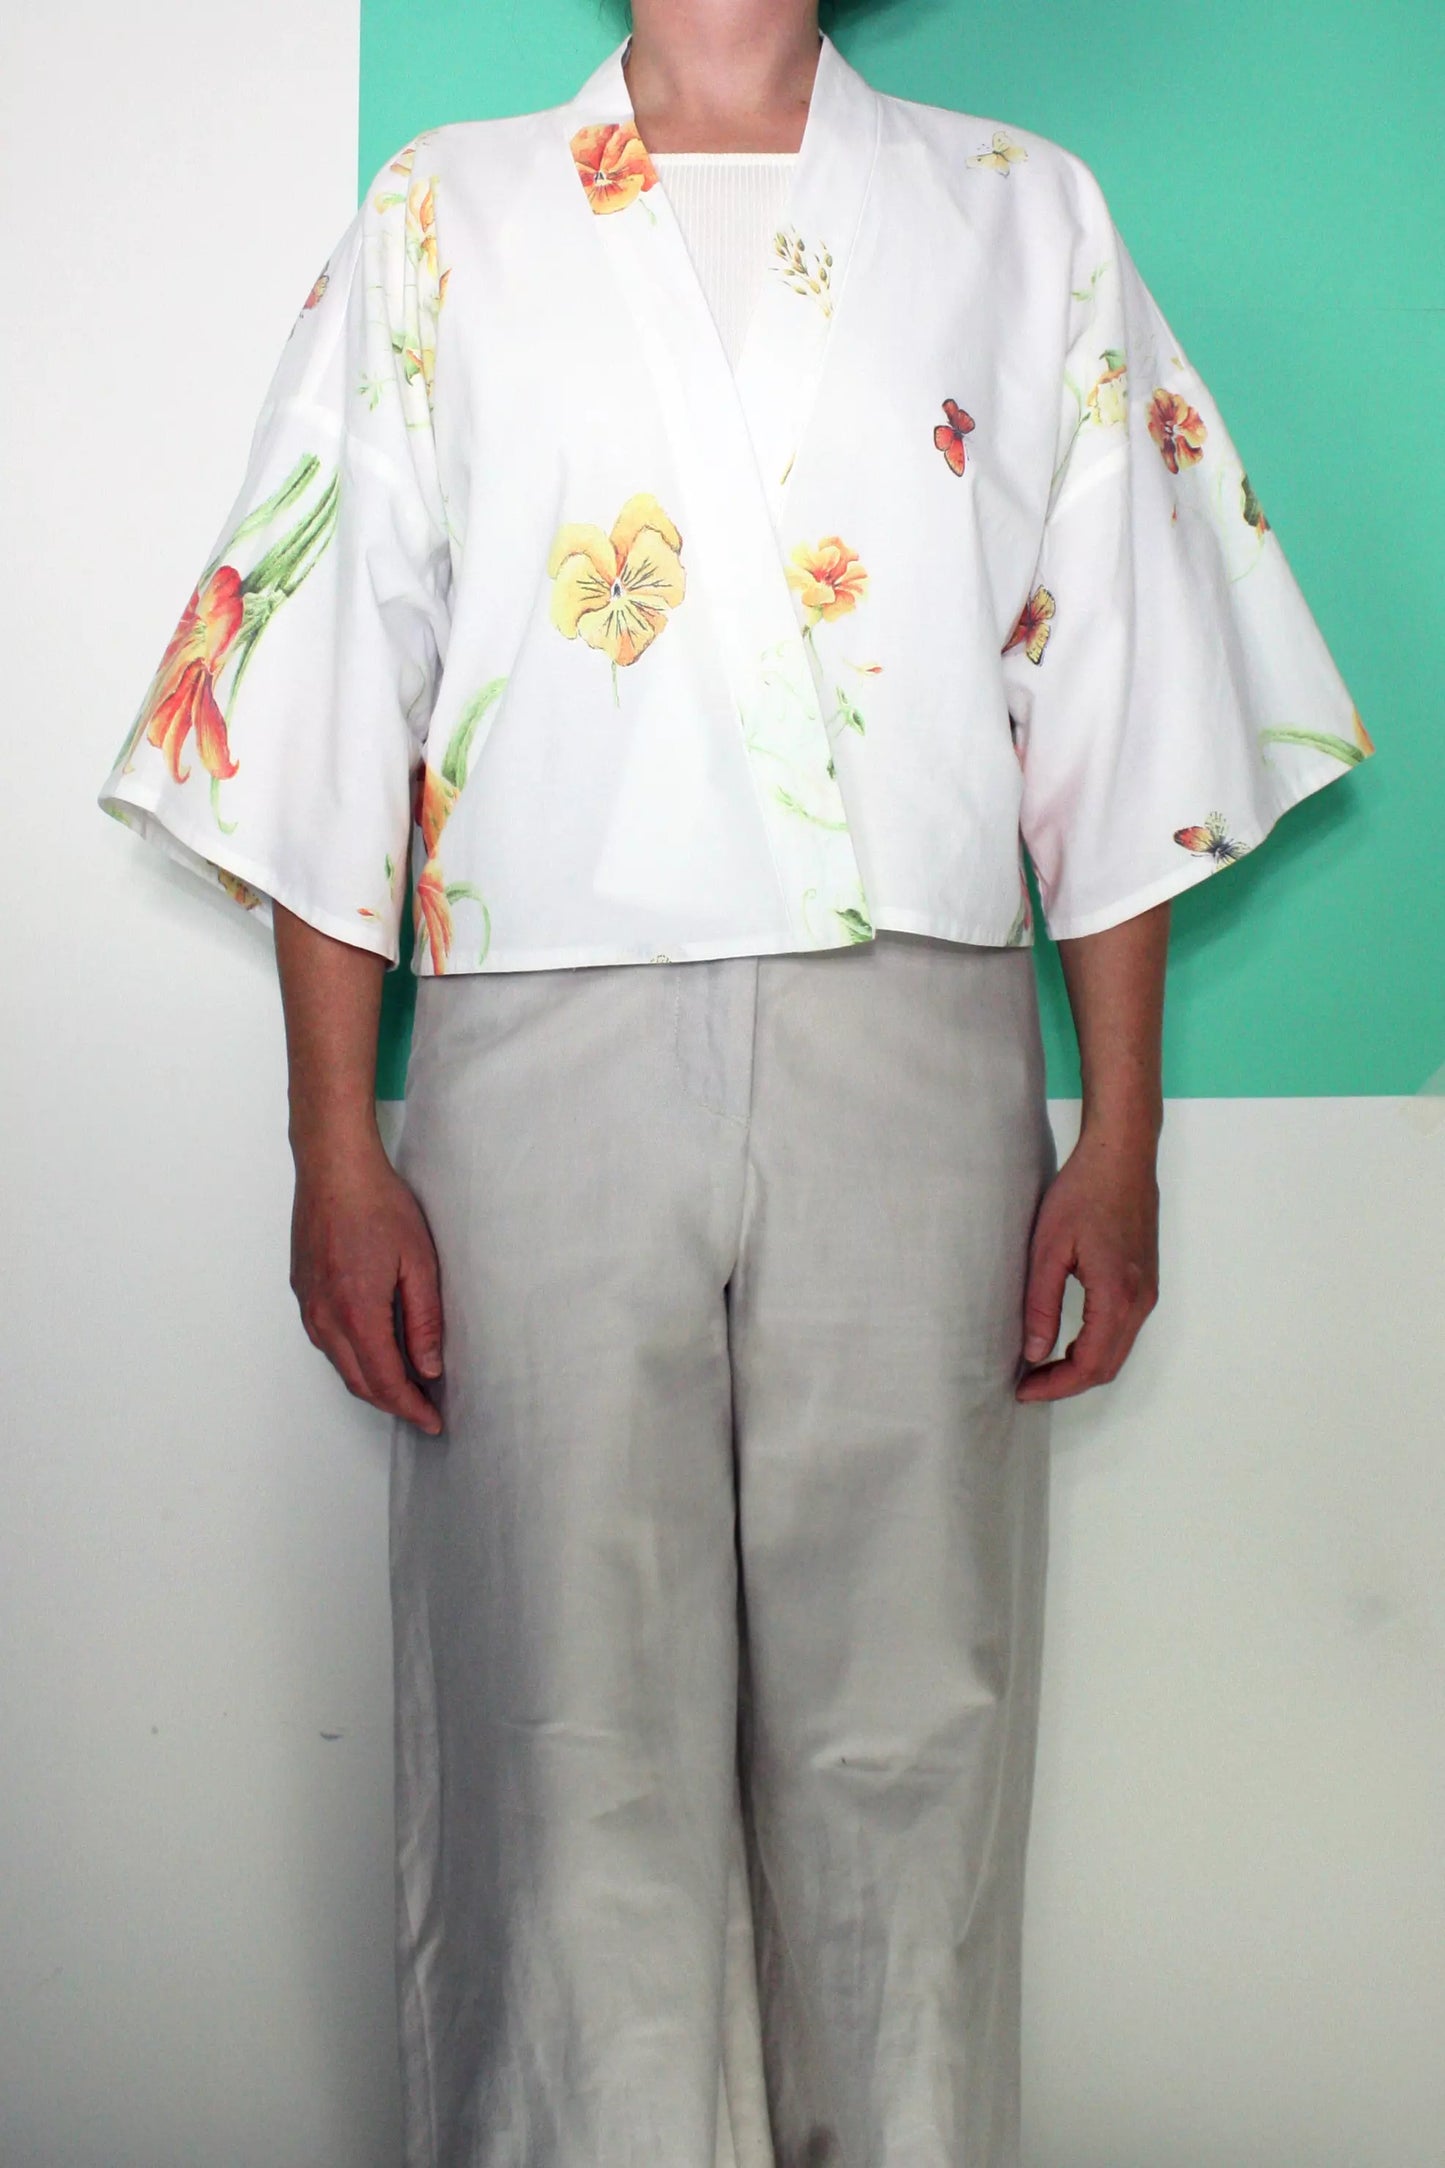 The Kimono - Wild flowers